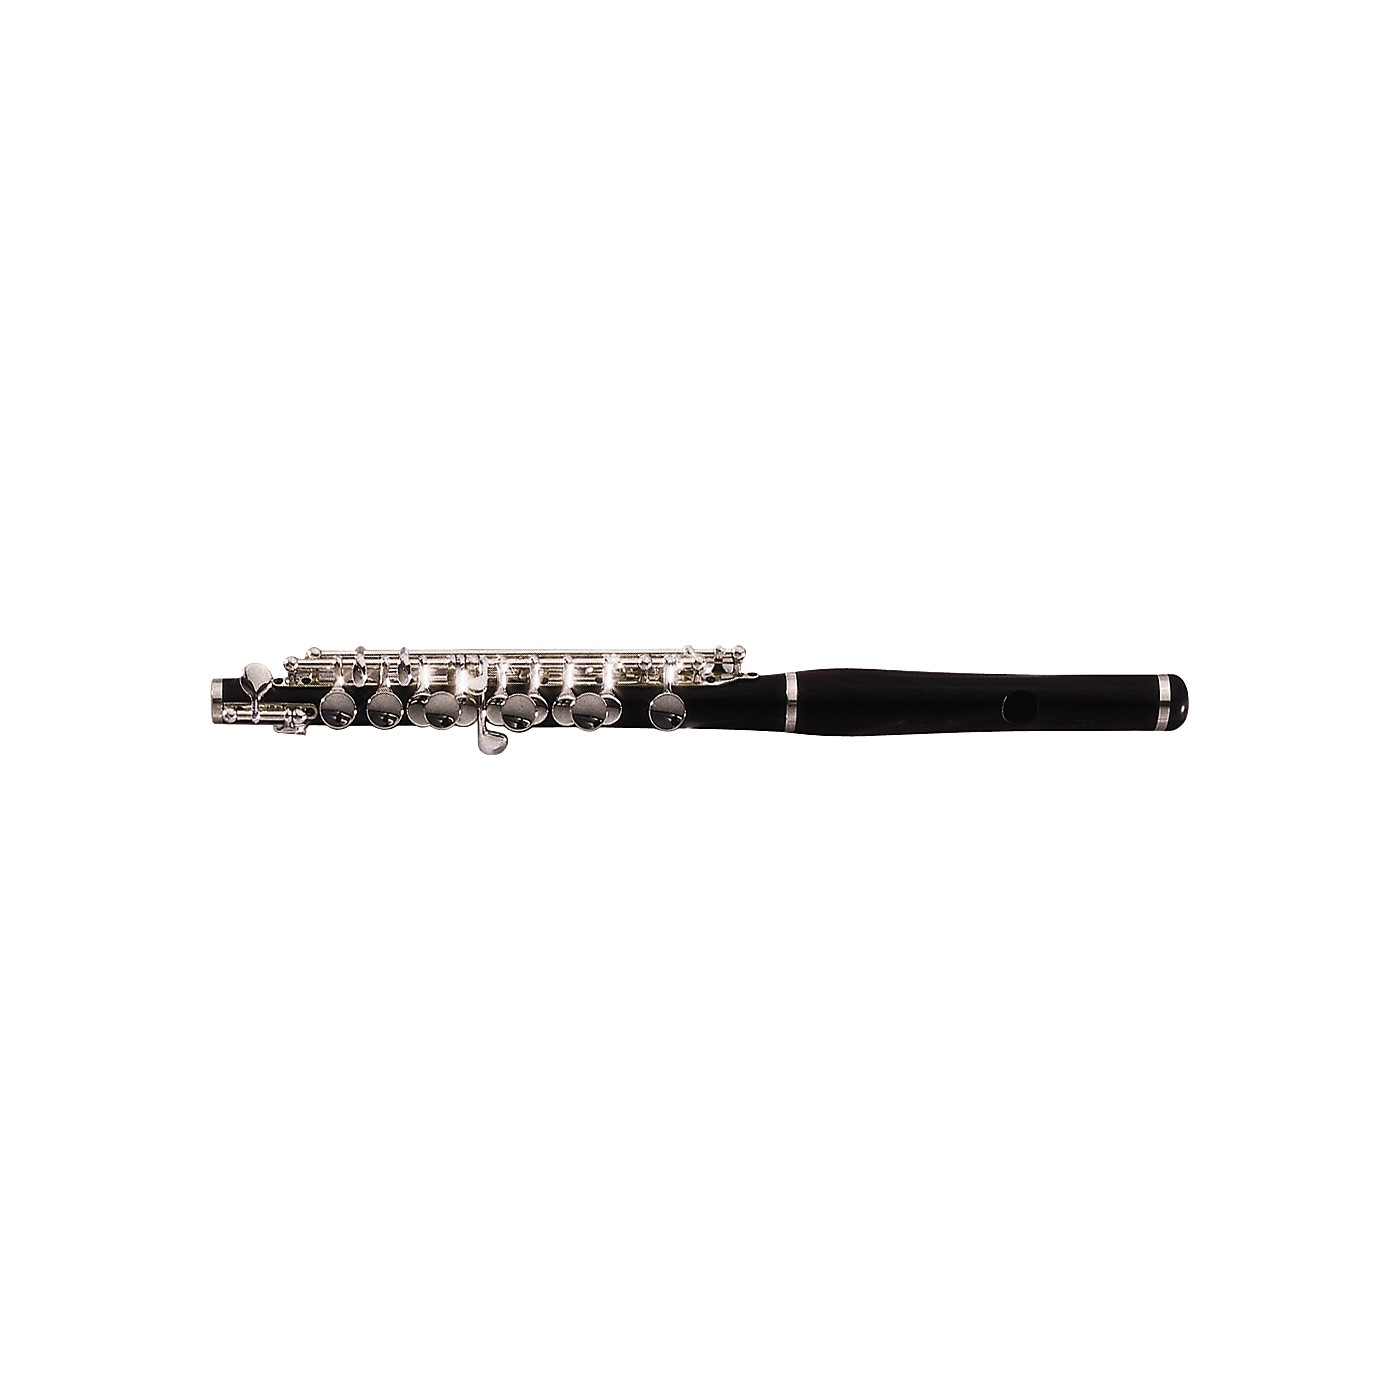 emerson flute company